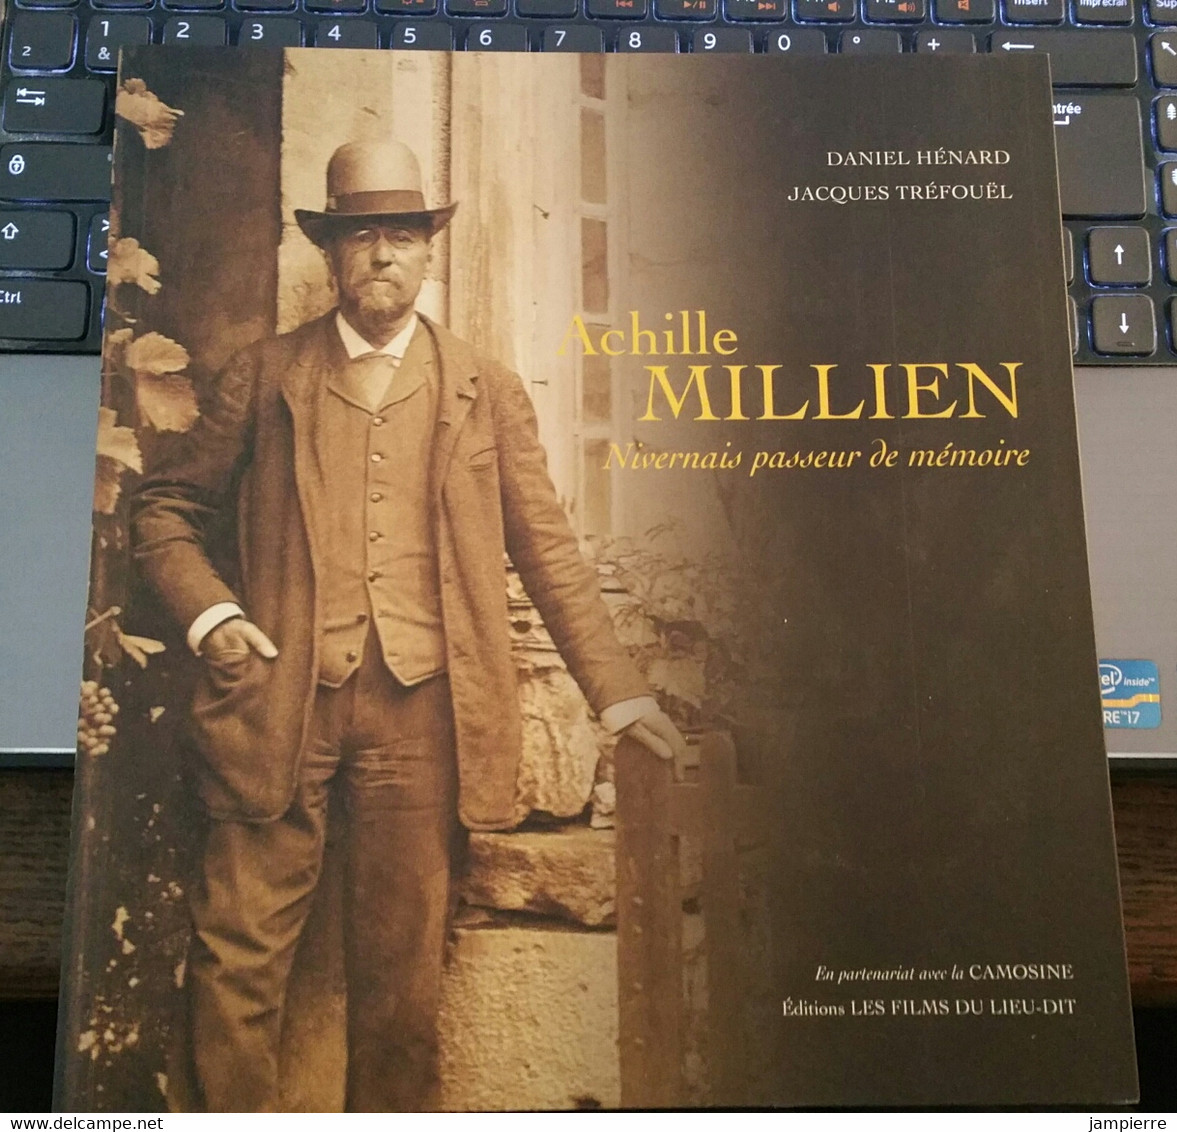 Achille Millien, Nivernais Passeur De Mémoire, Par Daniel Hénard Et Jacques Tréfouël, Livre N°336 - Bourgogne